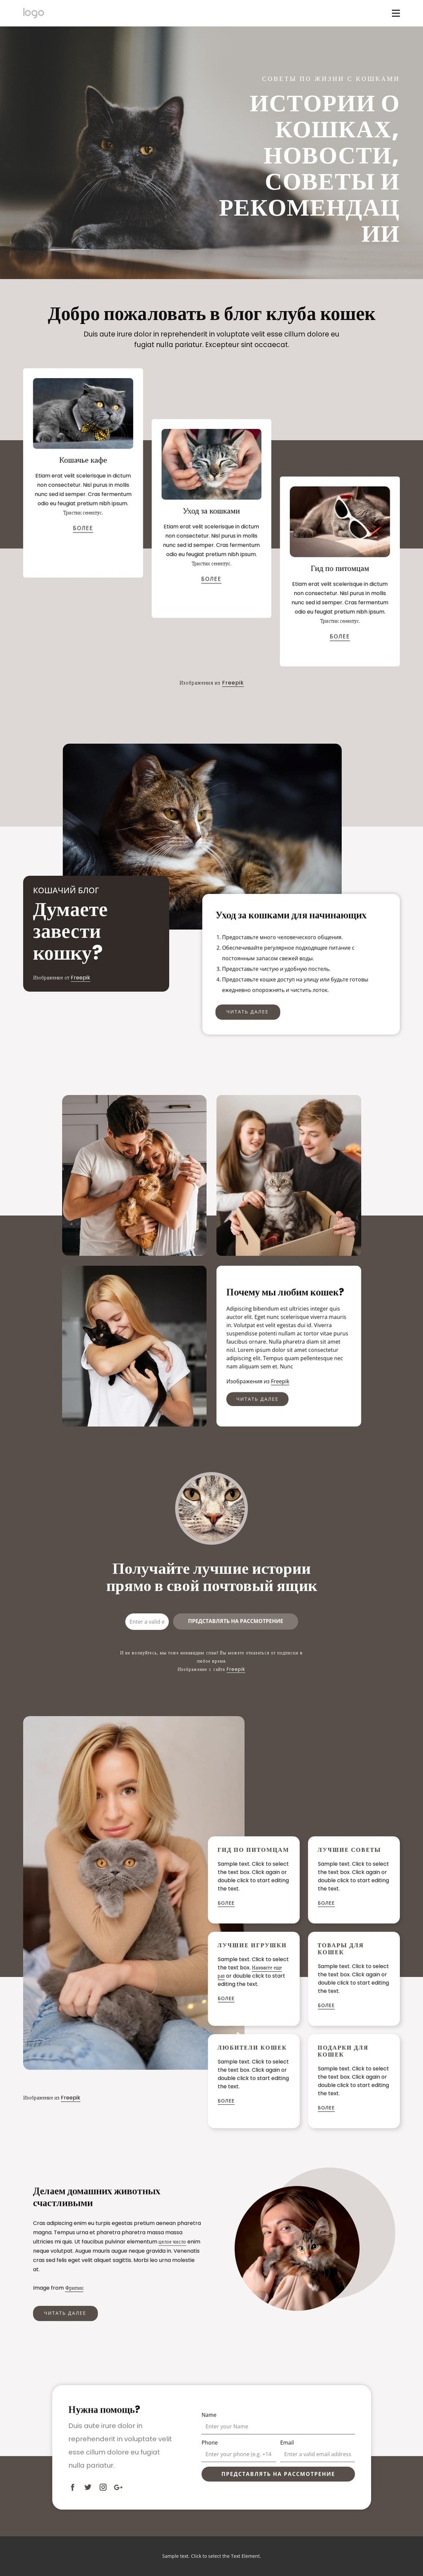 Истории о кошках, советы и рекомендации HTML5 шаблон